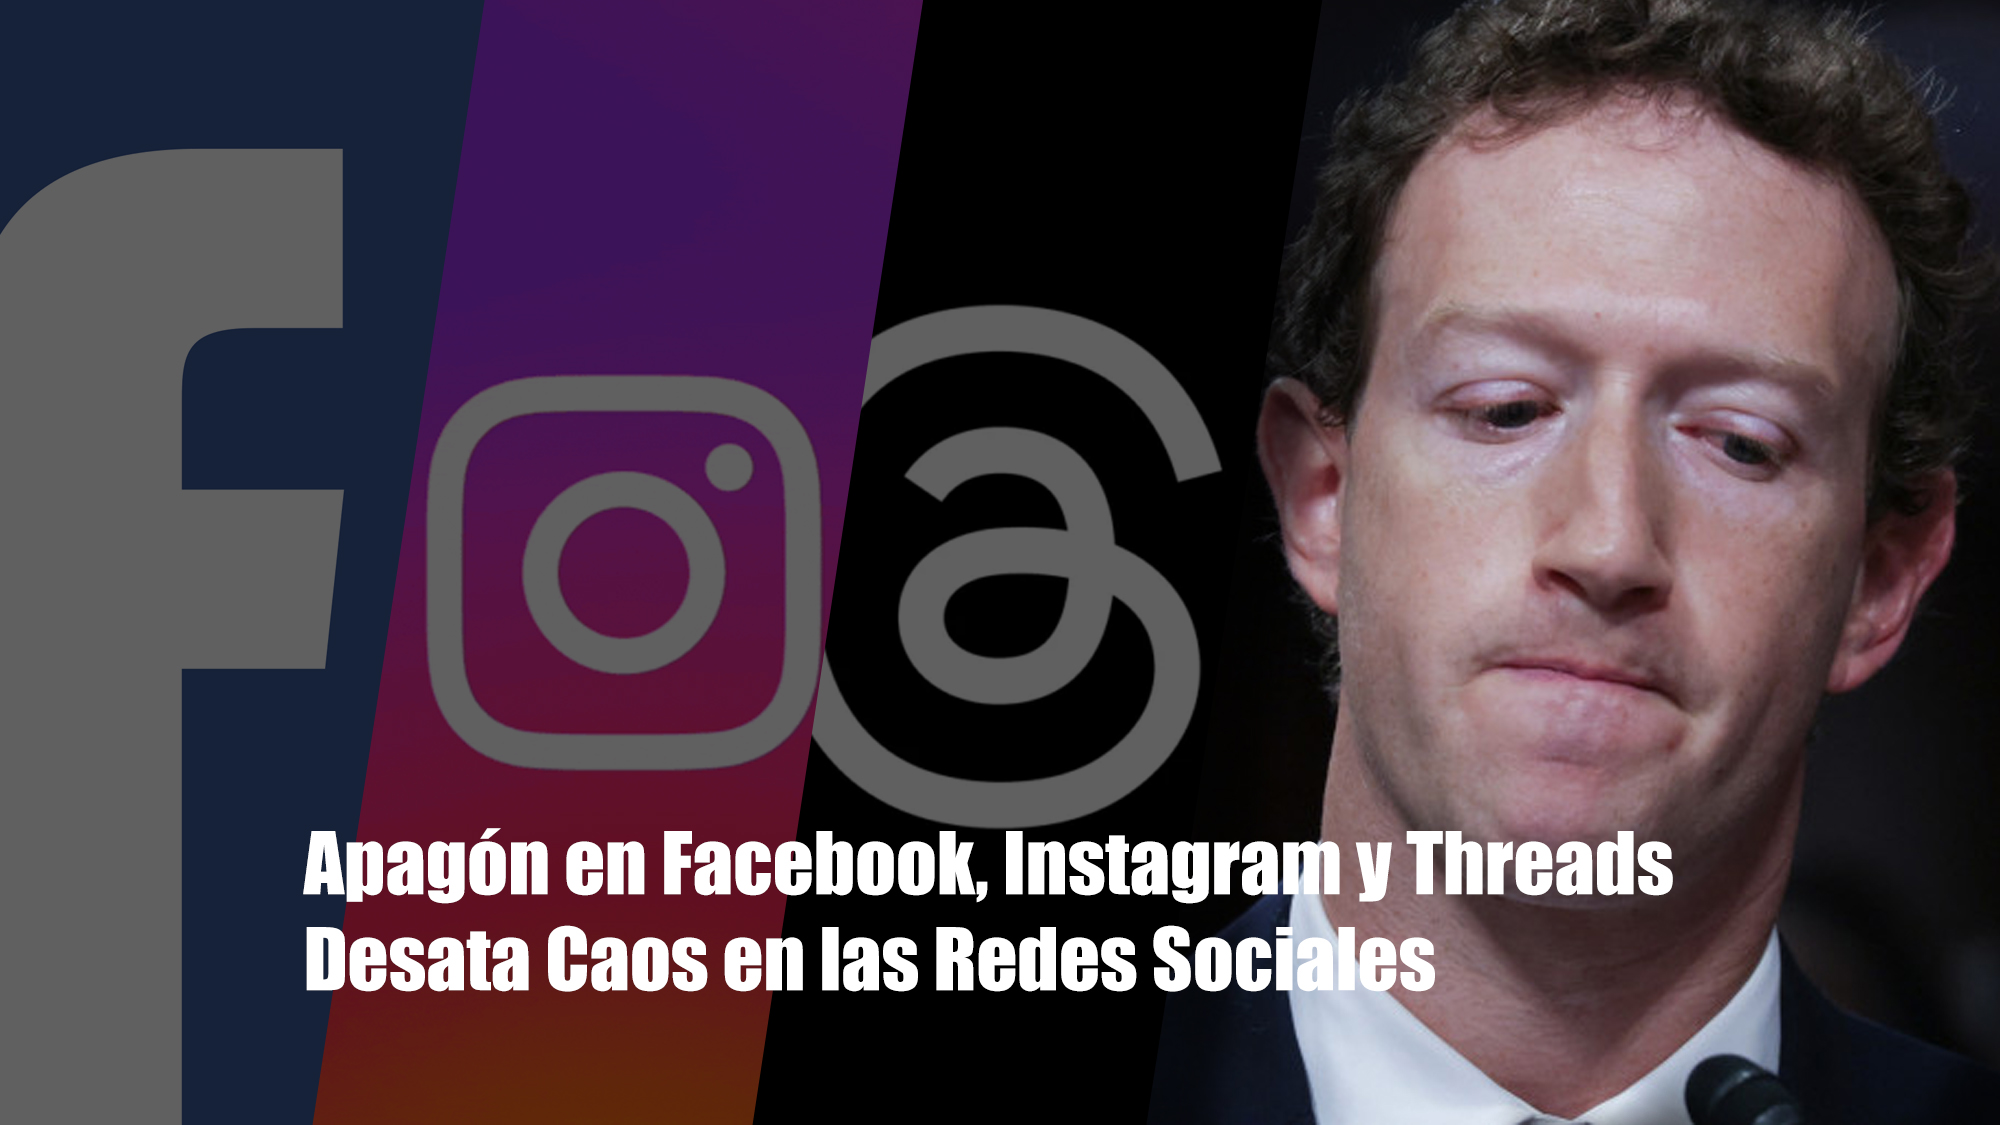 Apagón en Facebook, Instagram y Threads Desata Caos en las Redes Sociales